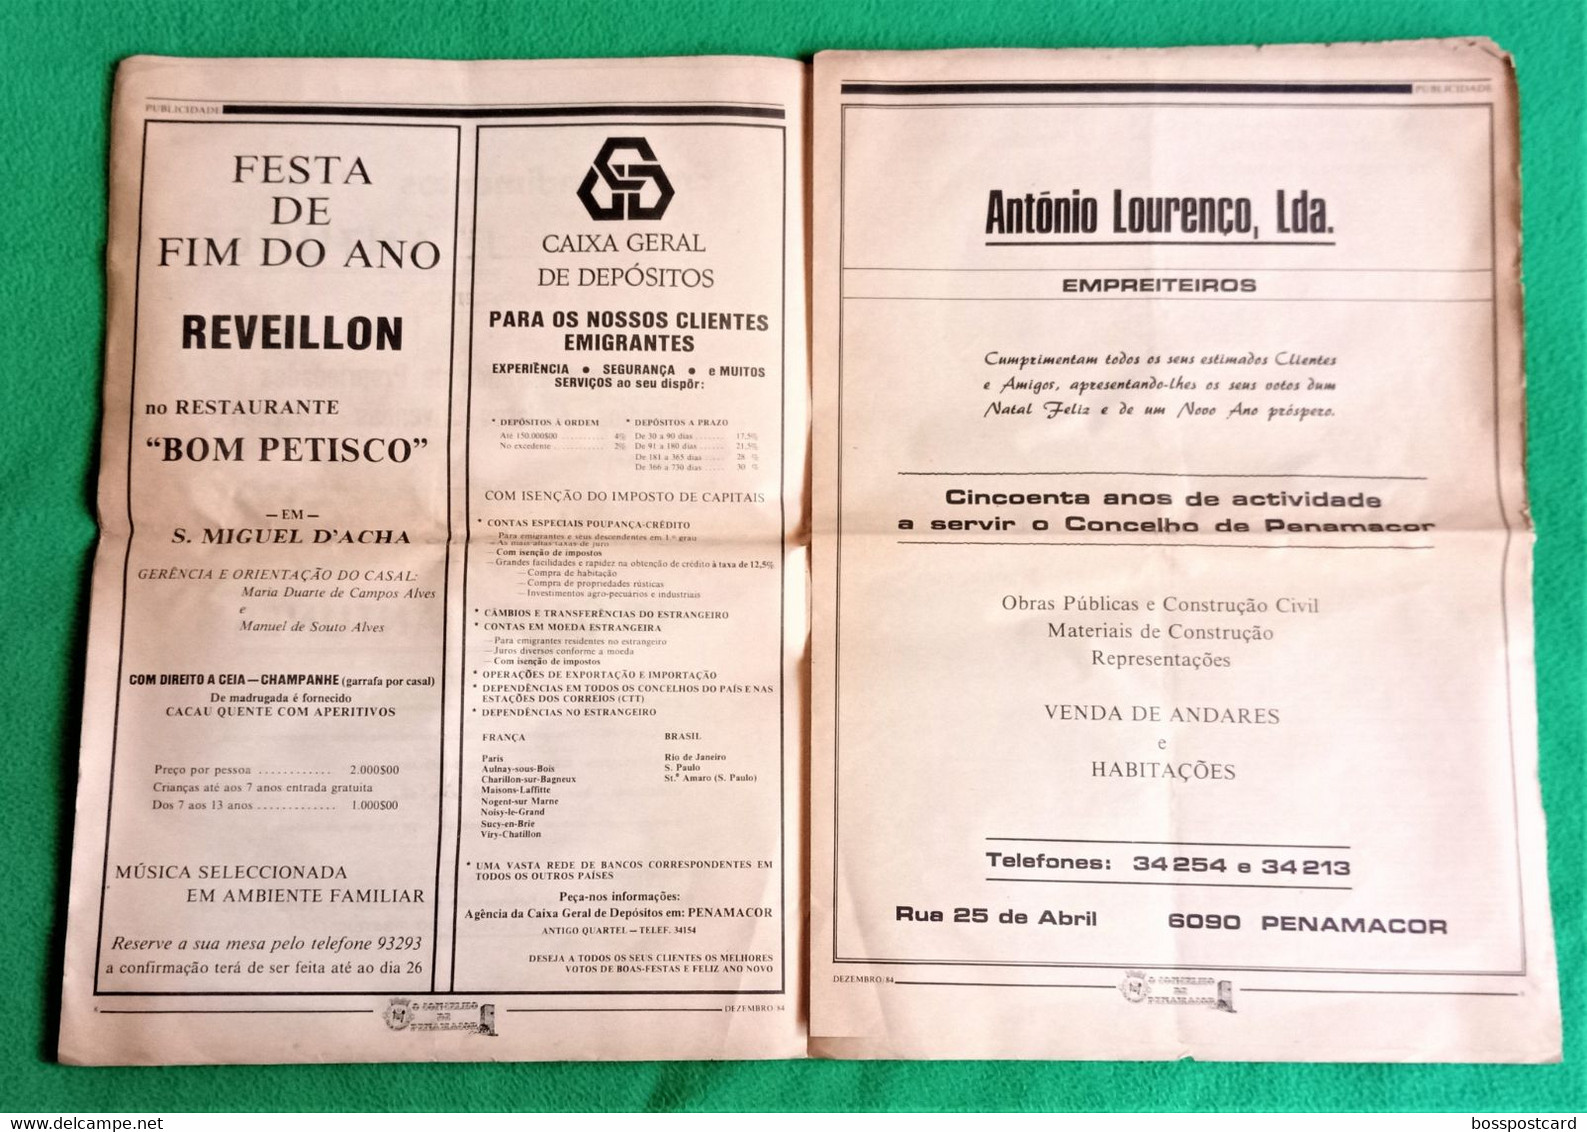 Penamacor - Jornal O Concelho De Penamacor Nº 45, 31 De Dezembro De 1984 - Imprensa. Castelo Branco. Portugal. - Informations Générales